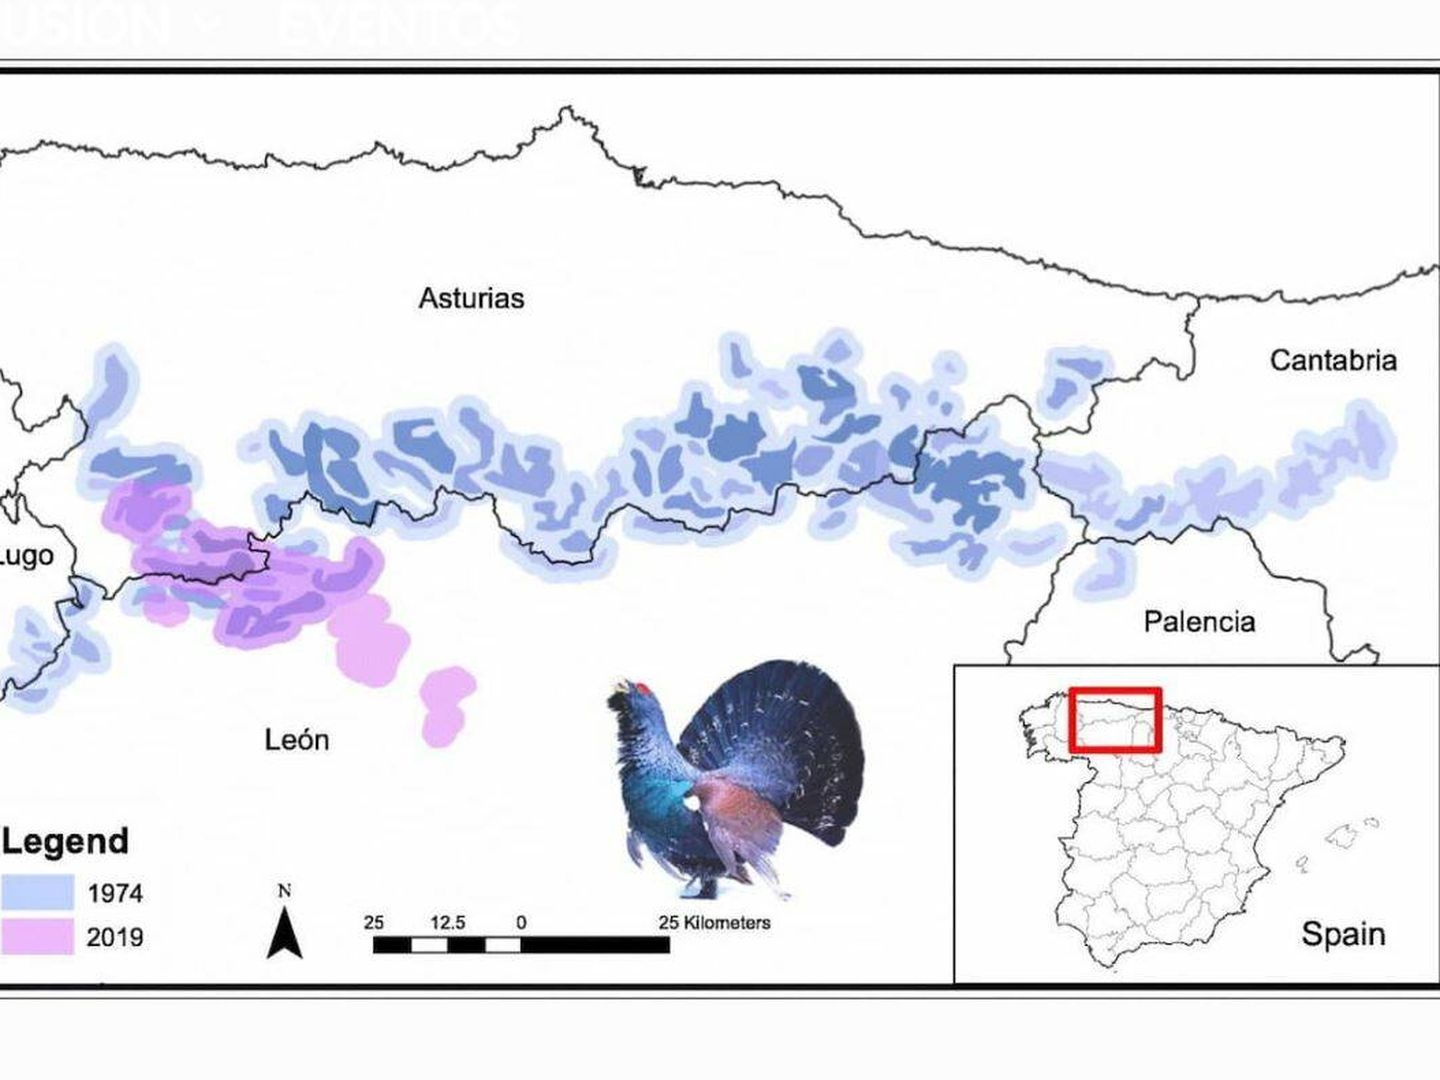 Área de distribución del urogallo cantábrico: 1974 (azul) - 2019 (rosa) / CSIC